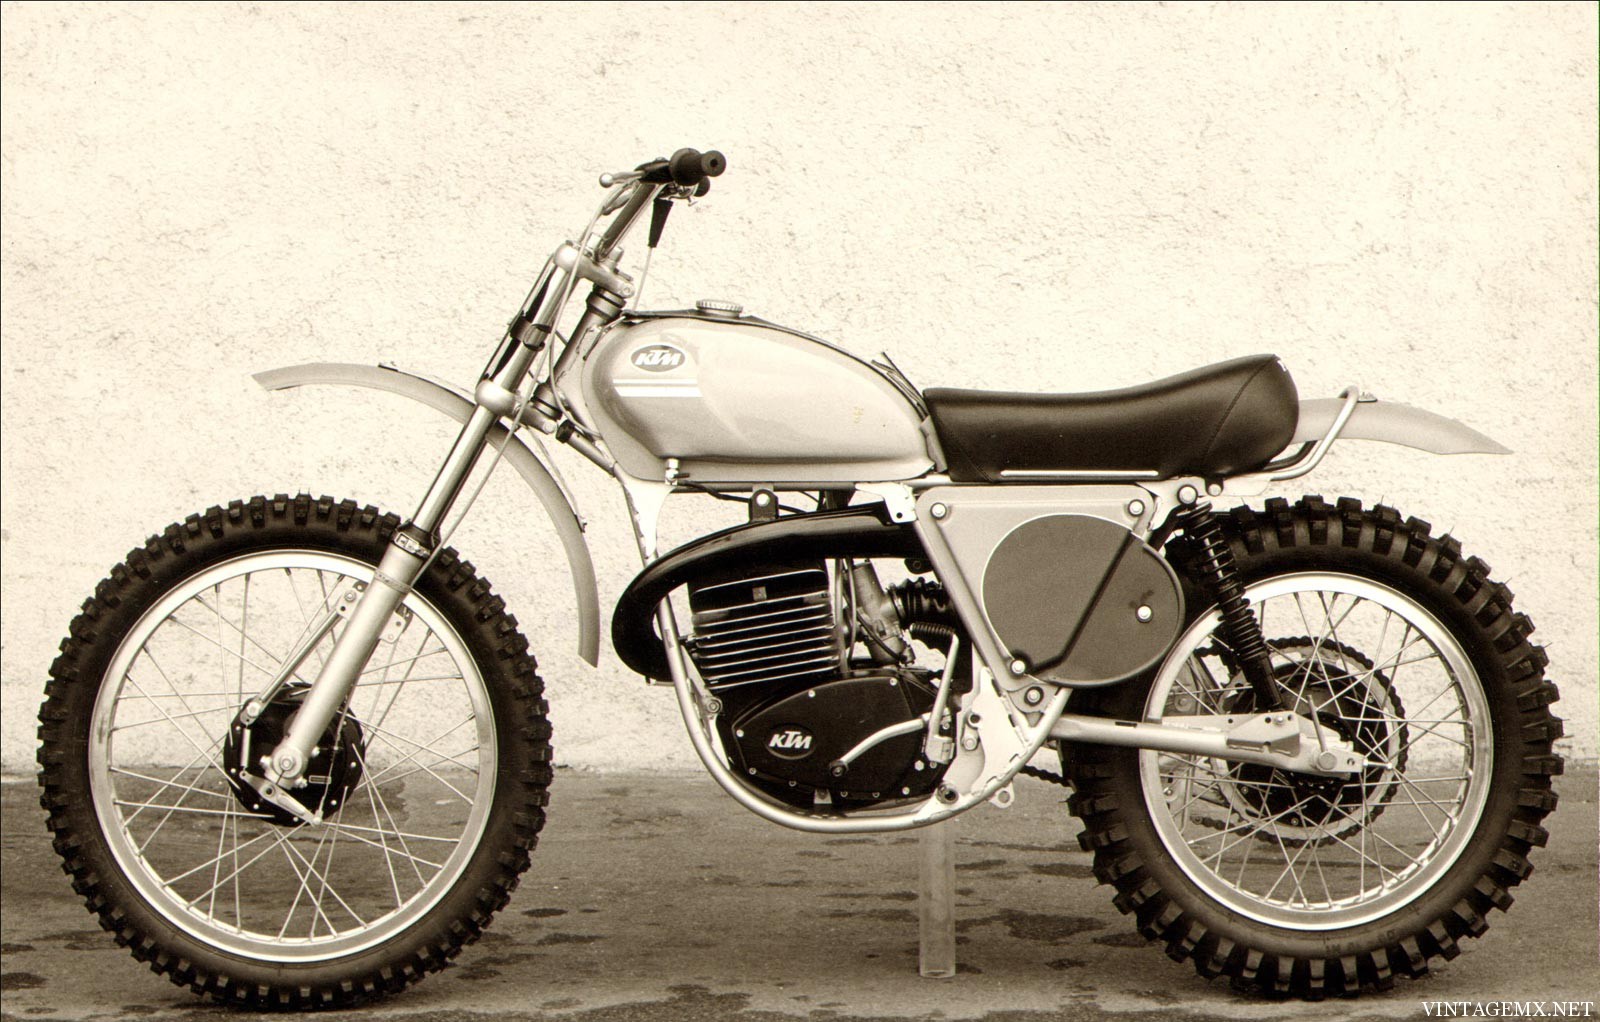 Vintage Ktm Motorcycles 31